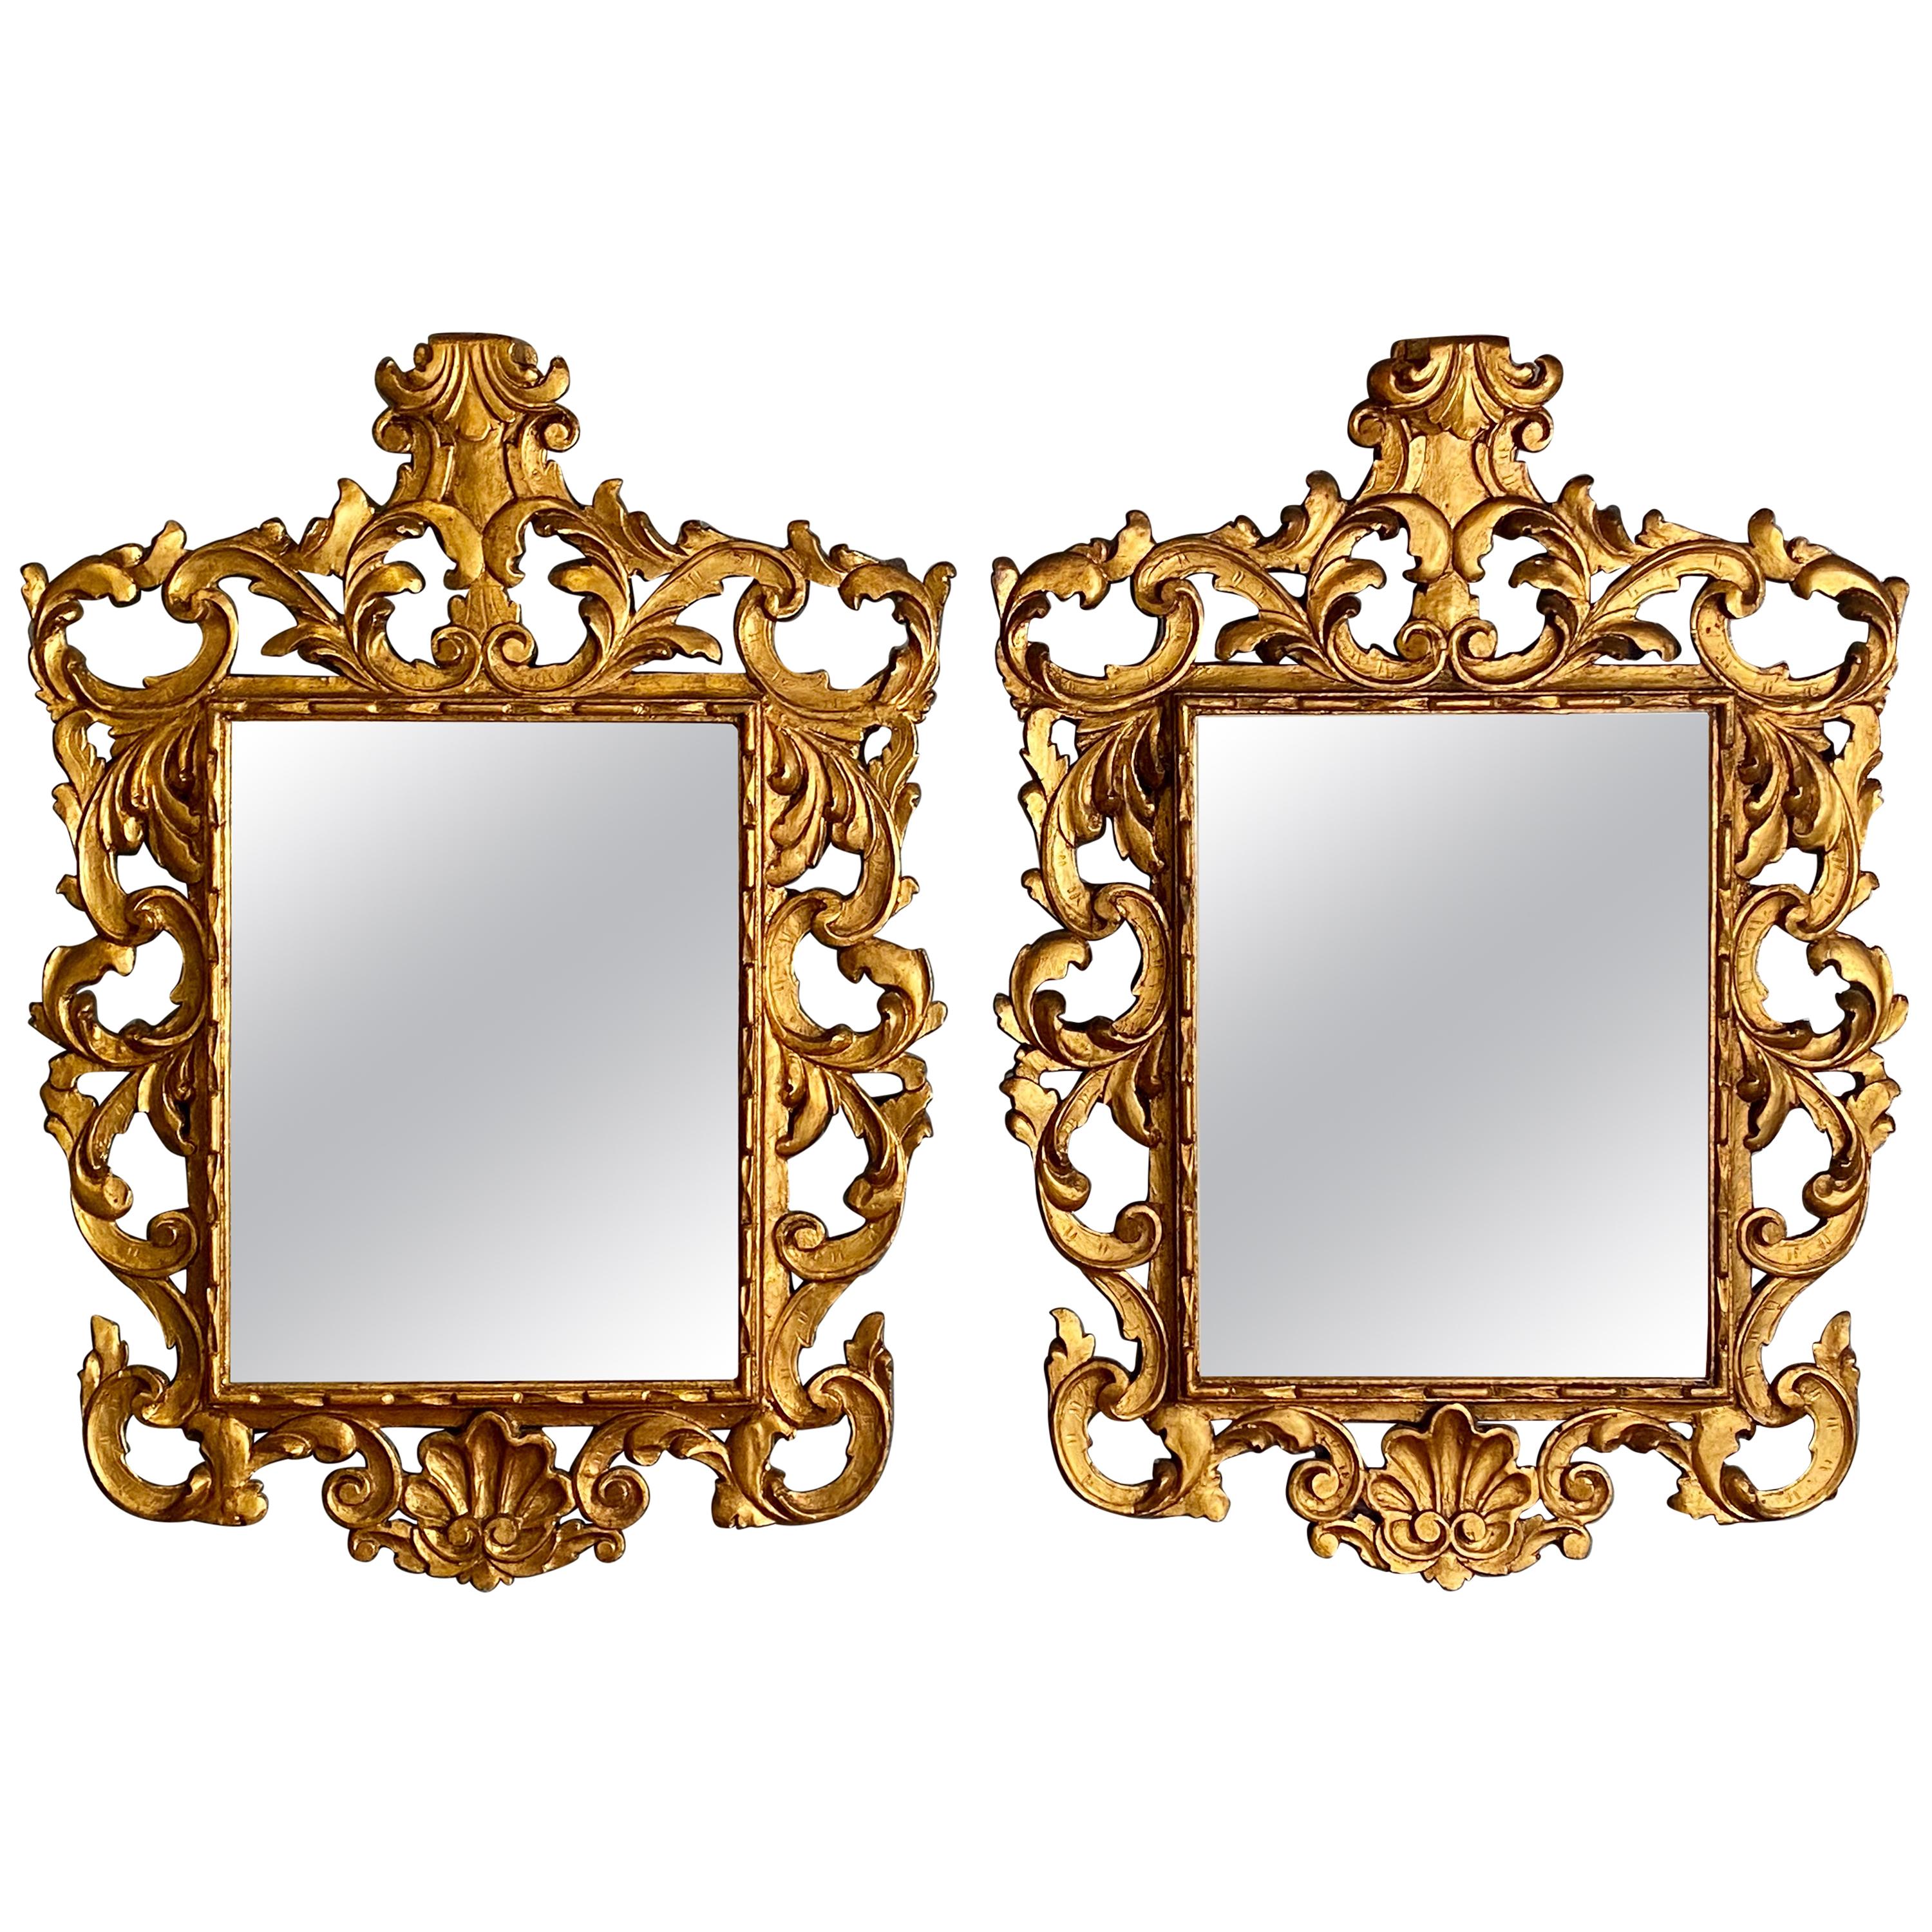 Paire de miroirs muraux ou consoles de style rococo avec cadre et entourage en bois doré sculpté